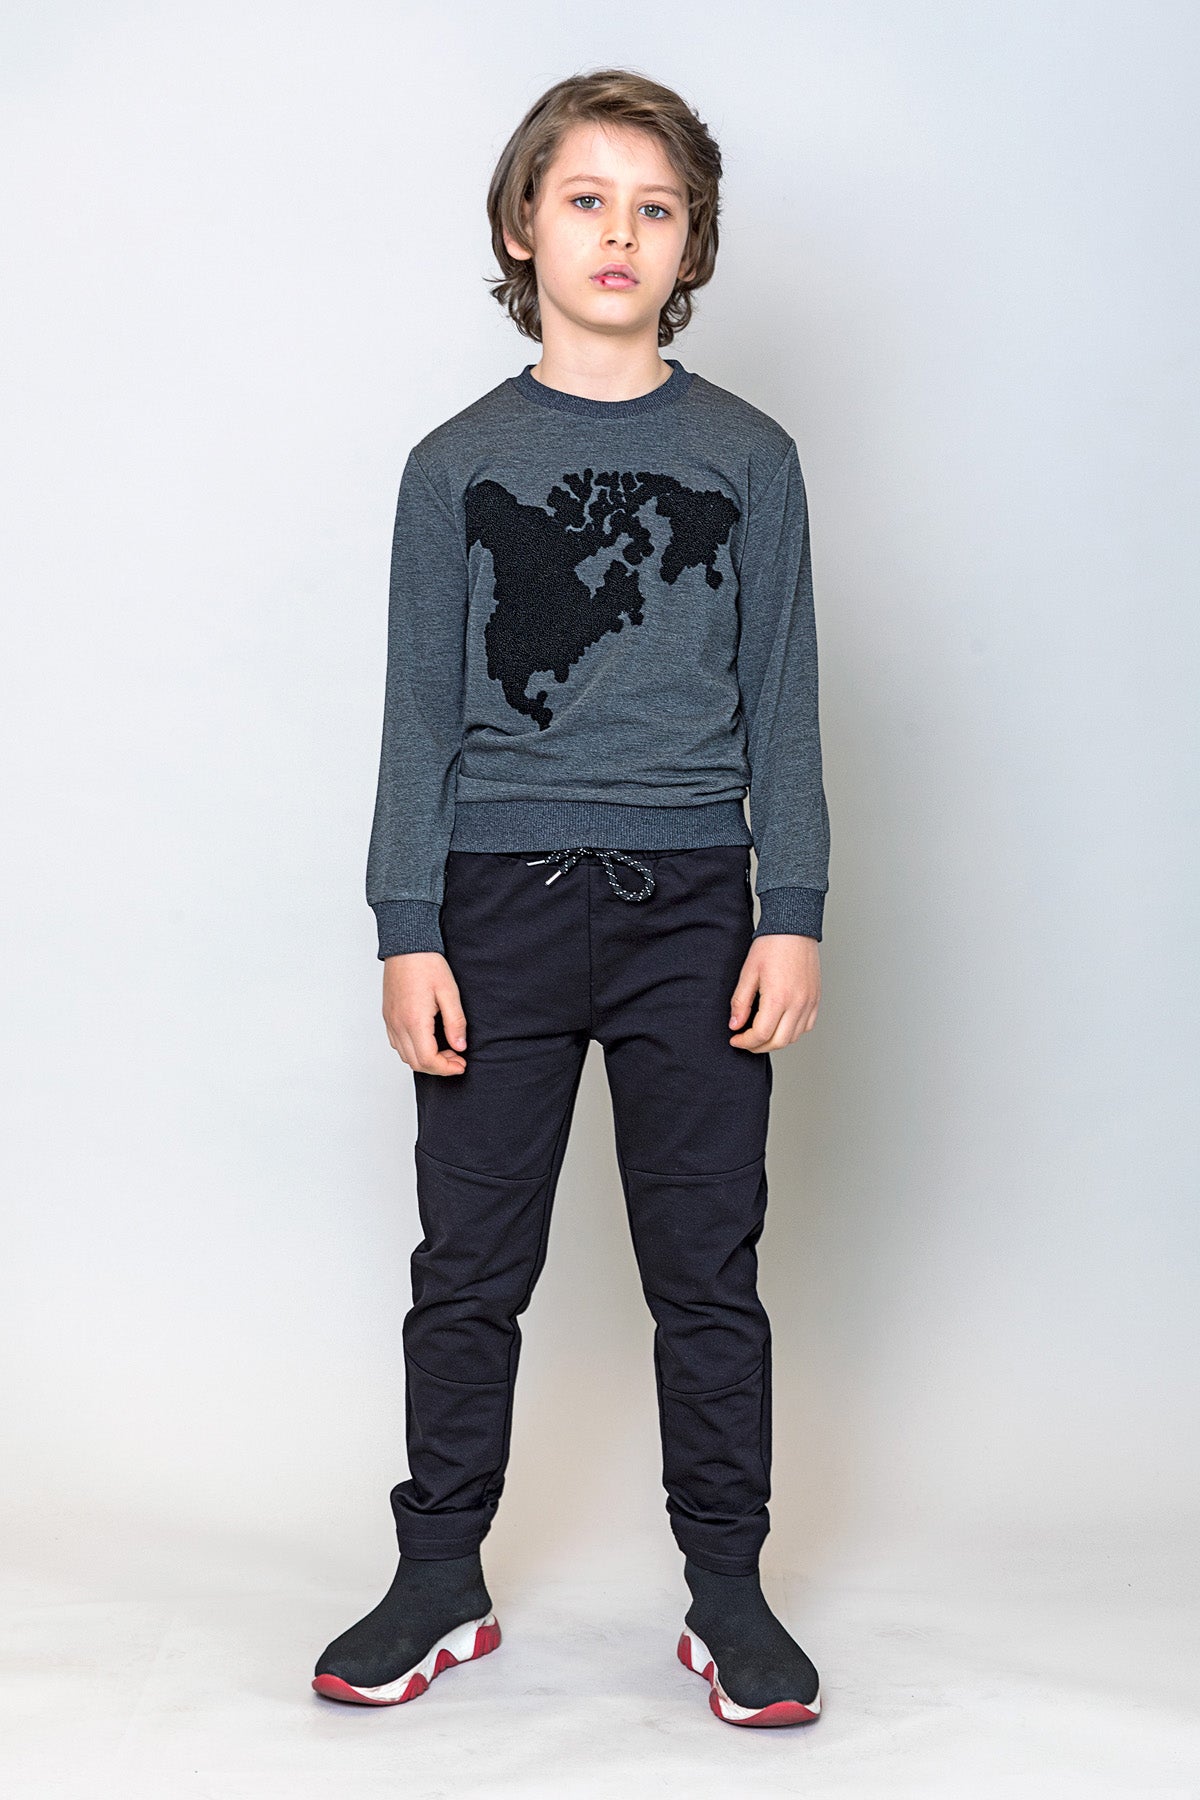 InCity Kids Erkek Çocuk Peluş Kuzey Amerika Haritası Detaylı Sweatshirt